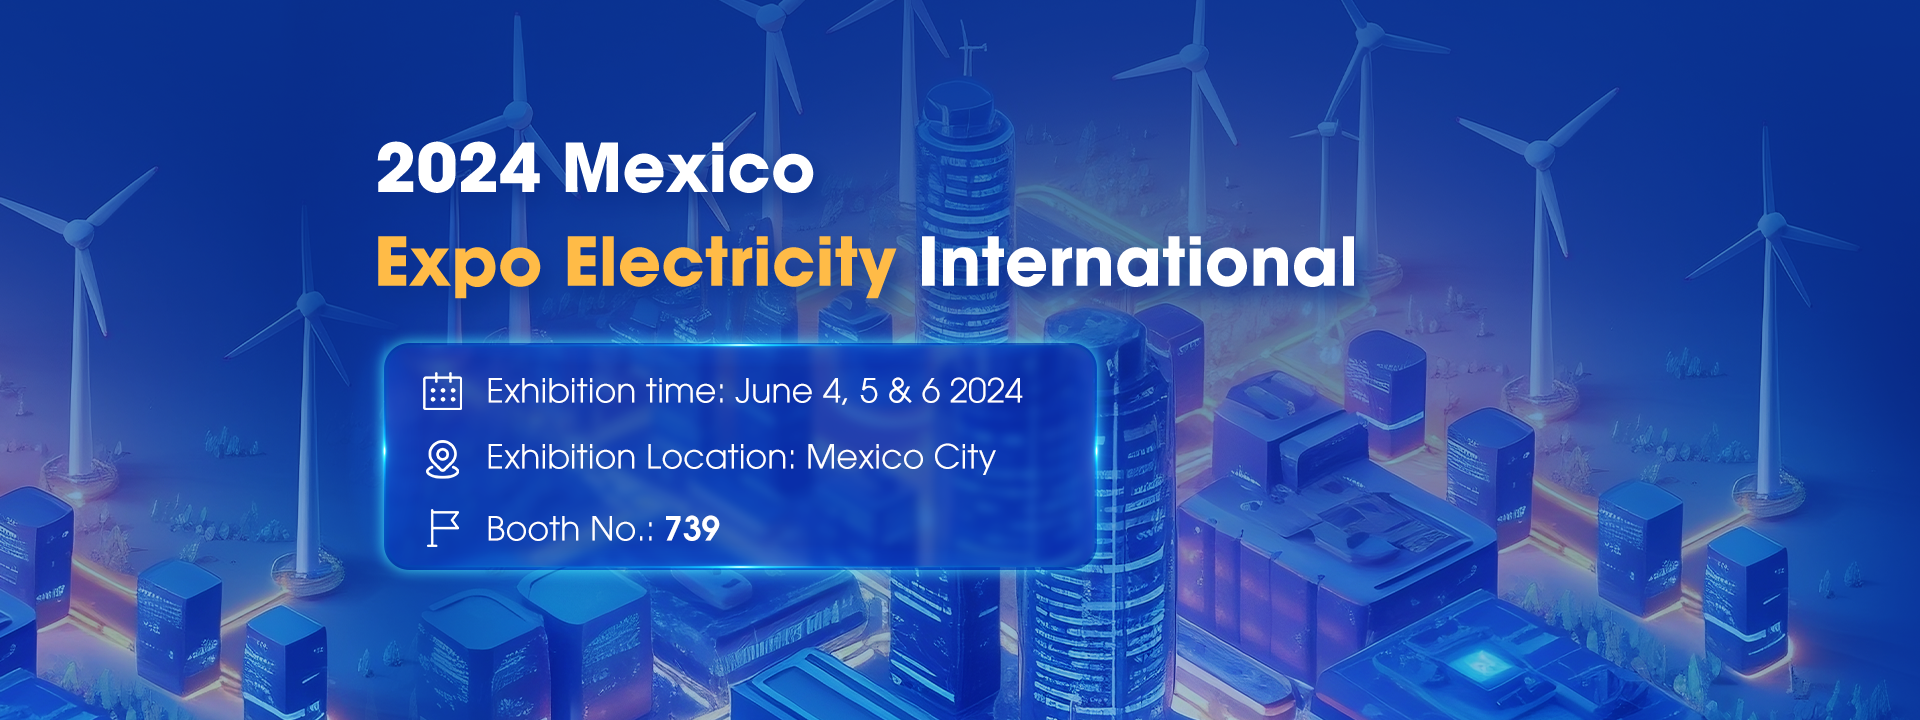 2024 Mexico Expo Electricity